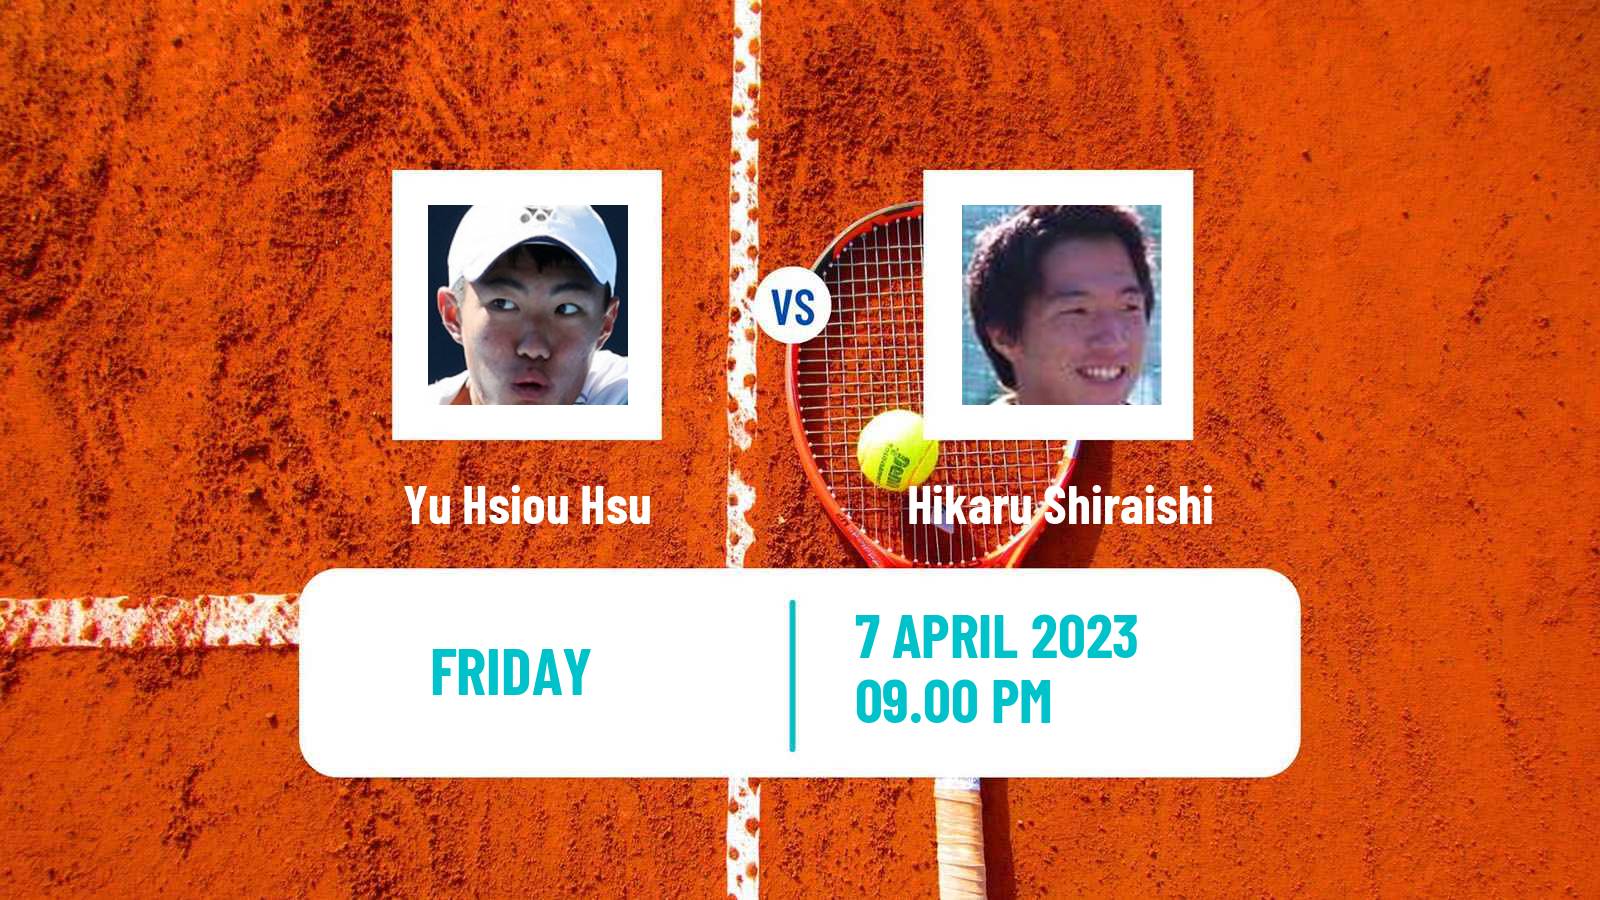 Tennis ITF Tournaments Yu Hsiou Hsu - Hikaru Shiraishi